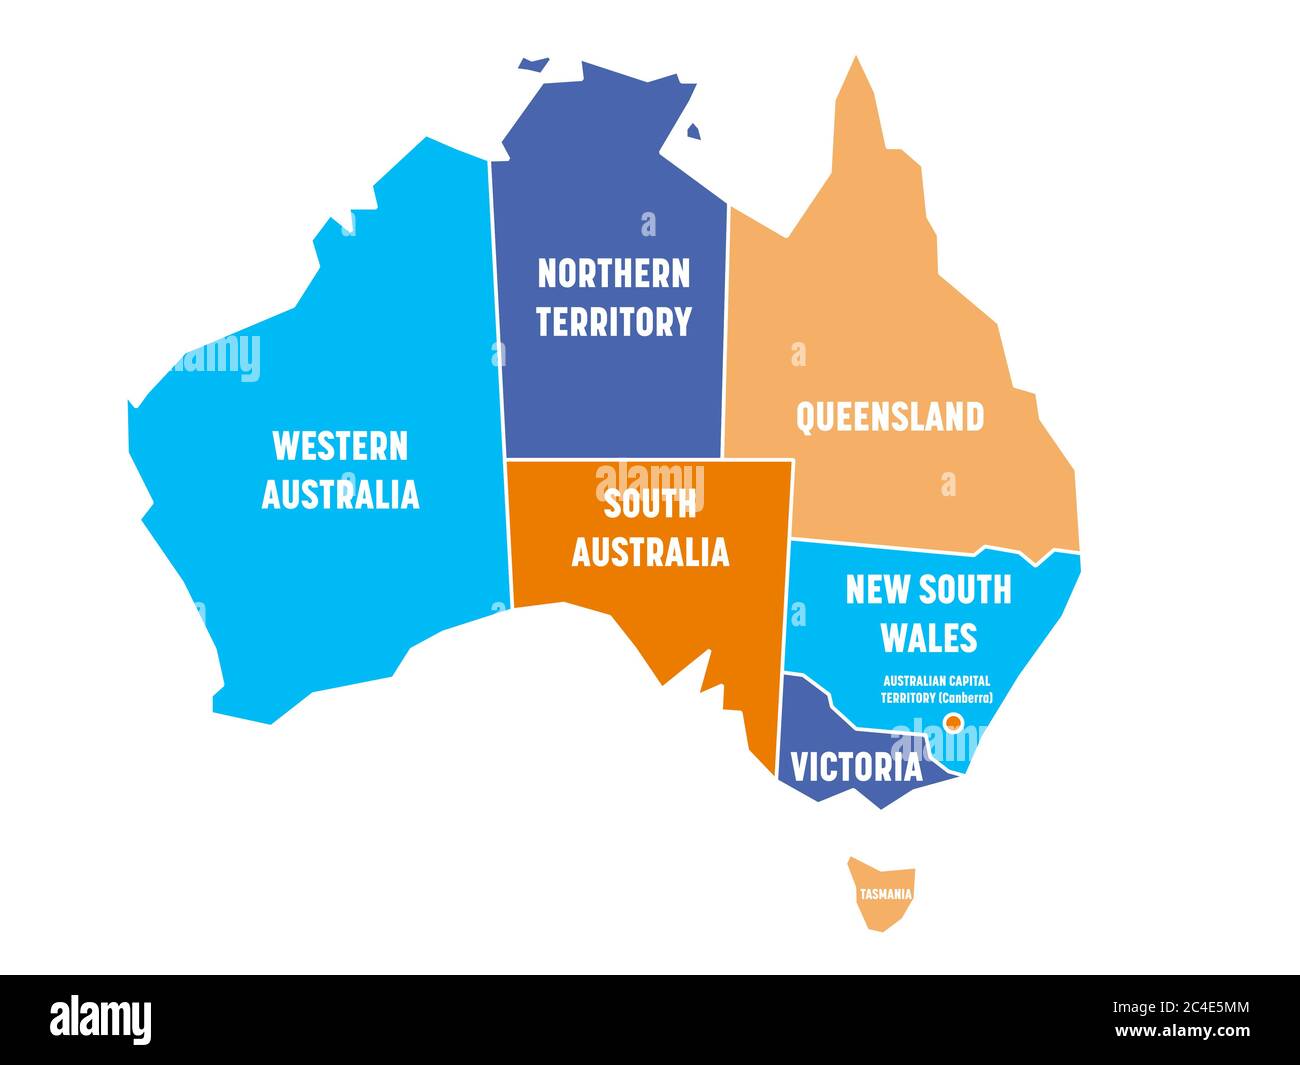 Mappa semplificata dell'Australia divisa in stati e territori. Mappa a quattro colori con bordi ed etichette bianche. Illustrazione vettoriale. Illustrazione Vettoriale